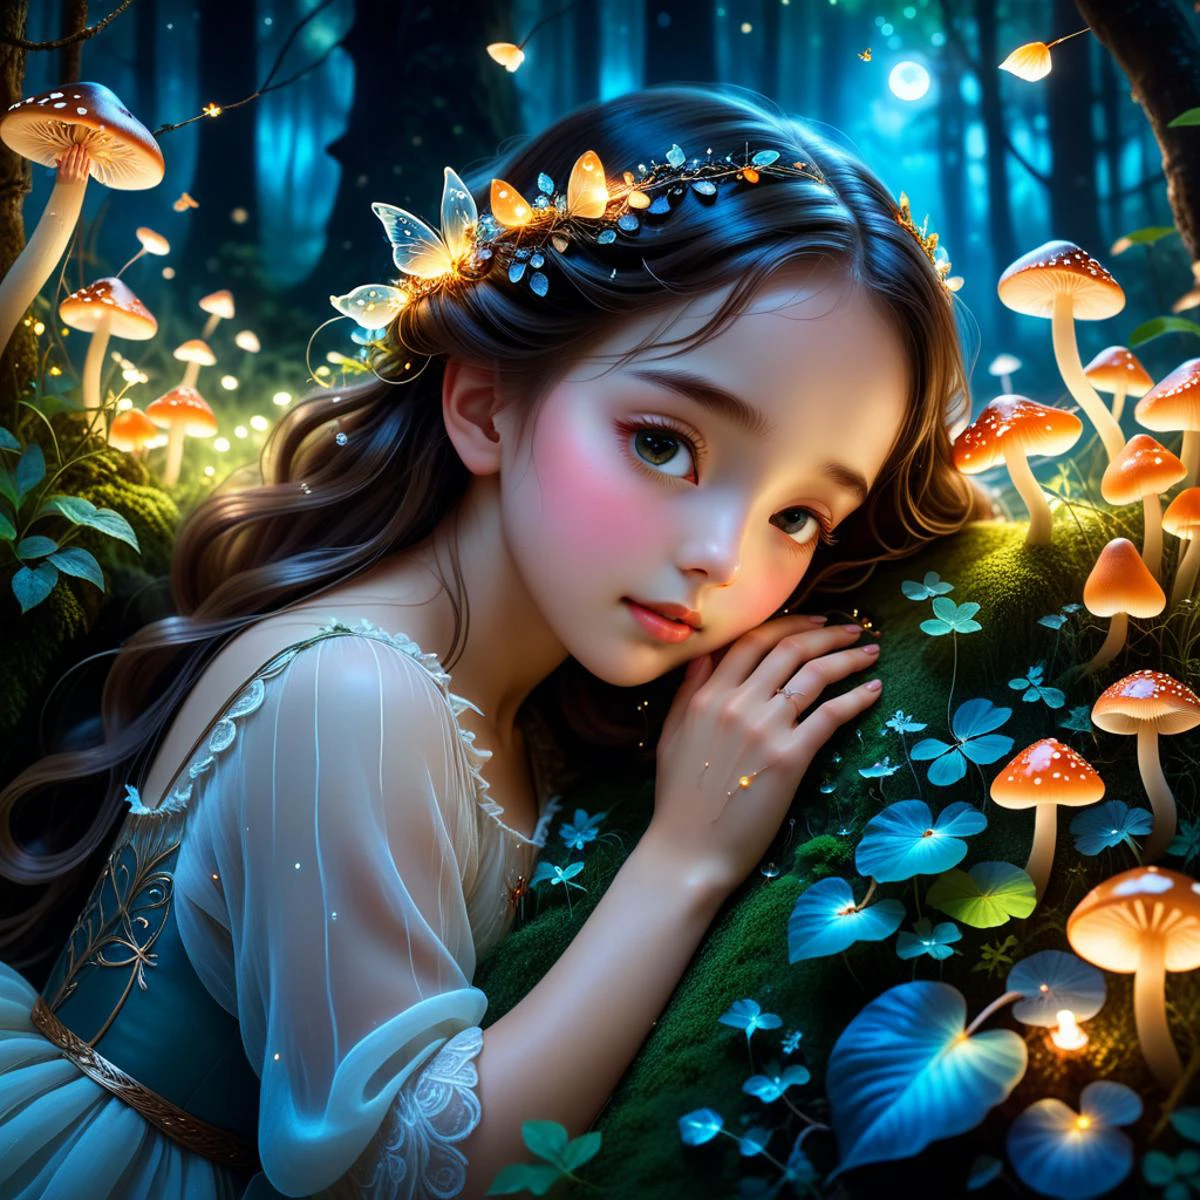 森の女神の腕の中で眠る小さな女の子,魔法の森,夢のような色彩,夜間,光るキノコ,キラキラ輝くホタル,柔らかな月明かり,繊細なディテール,ファンタジーアート,詳細なテクスチャ,豊かな緑,魔法のような雰囲気,穏やかで平和な,美しく幻想的,女の子が1を占める/画像の5,画像の中央下部にいる女の子,高い木々,密生した葉,曇り空,影の森,ドラマチックな視点,大規模な,畏敬の念,森林を主な焦点とする,アニメスタイル,大きな目,かわいい顔立ち,柔らかい髪,ゆったりとしたドレス,甘くて無邪気な表現,鮮やかな色彩,気まぐれで魅力的な,子供のような驚き,美しく魅惑的な,**細かい手,優雅な指,エレガントな指先,自然な手のポーズ,リアルな手の解剖学,柔らかい肌,繊細な静脈,完璧な爪,五本の指,5 桁の数字,正しい手の構造,余分な指はありません,はっきりとした指**,